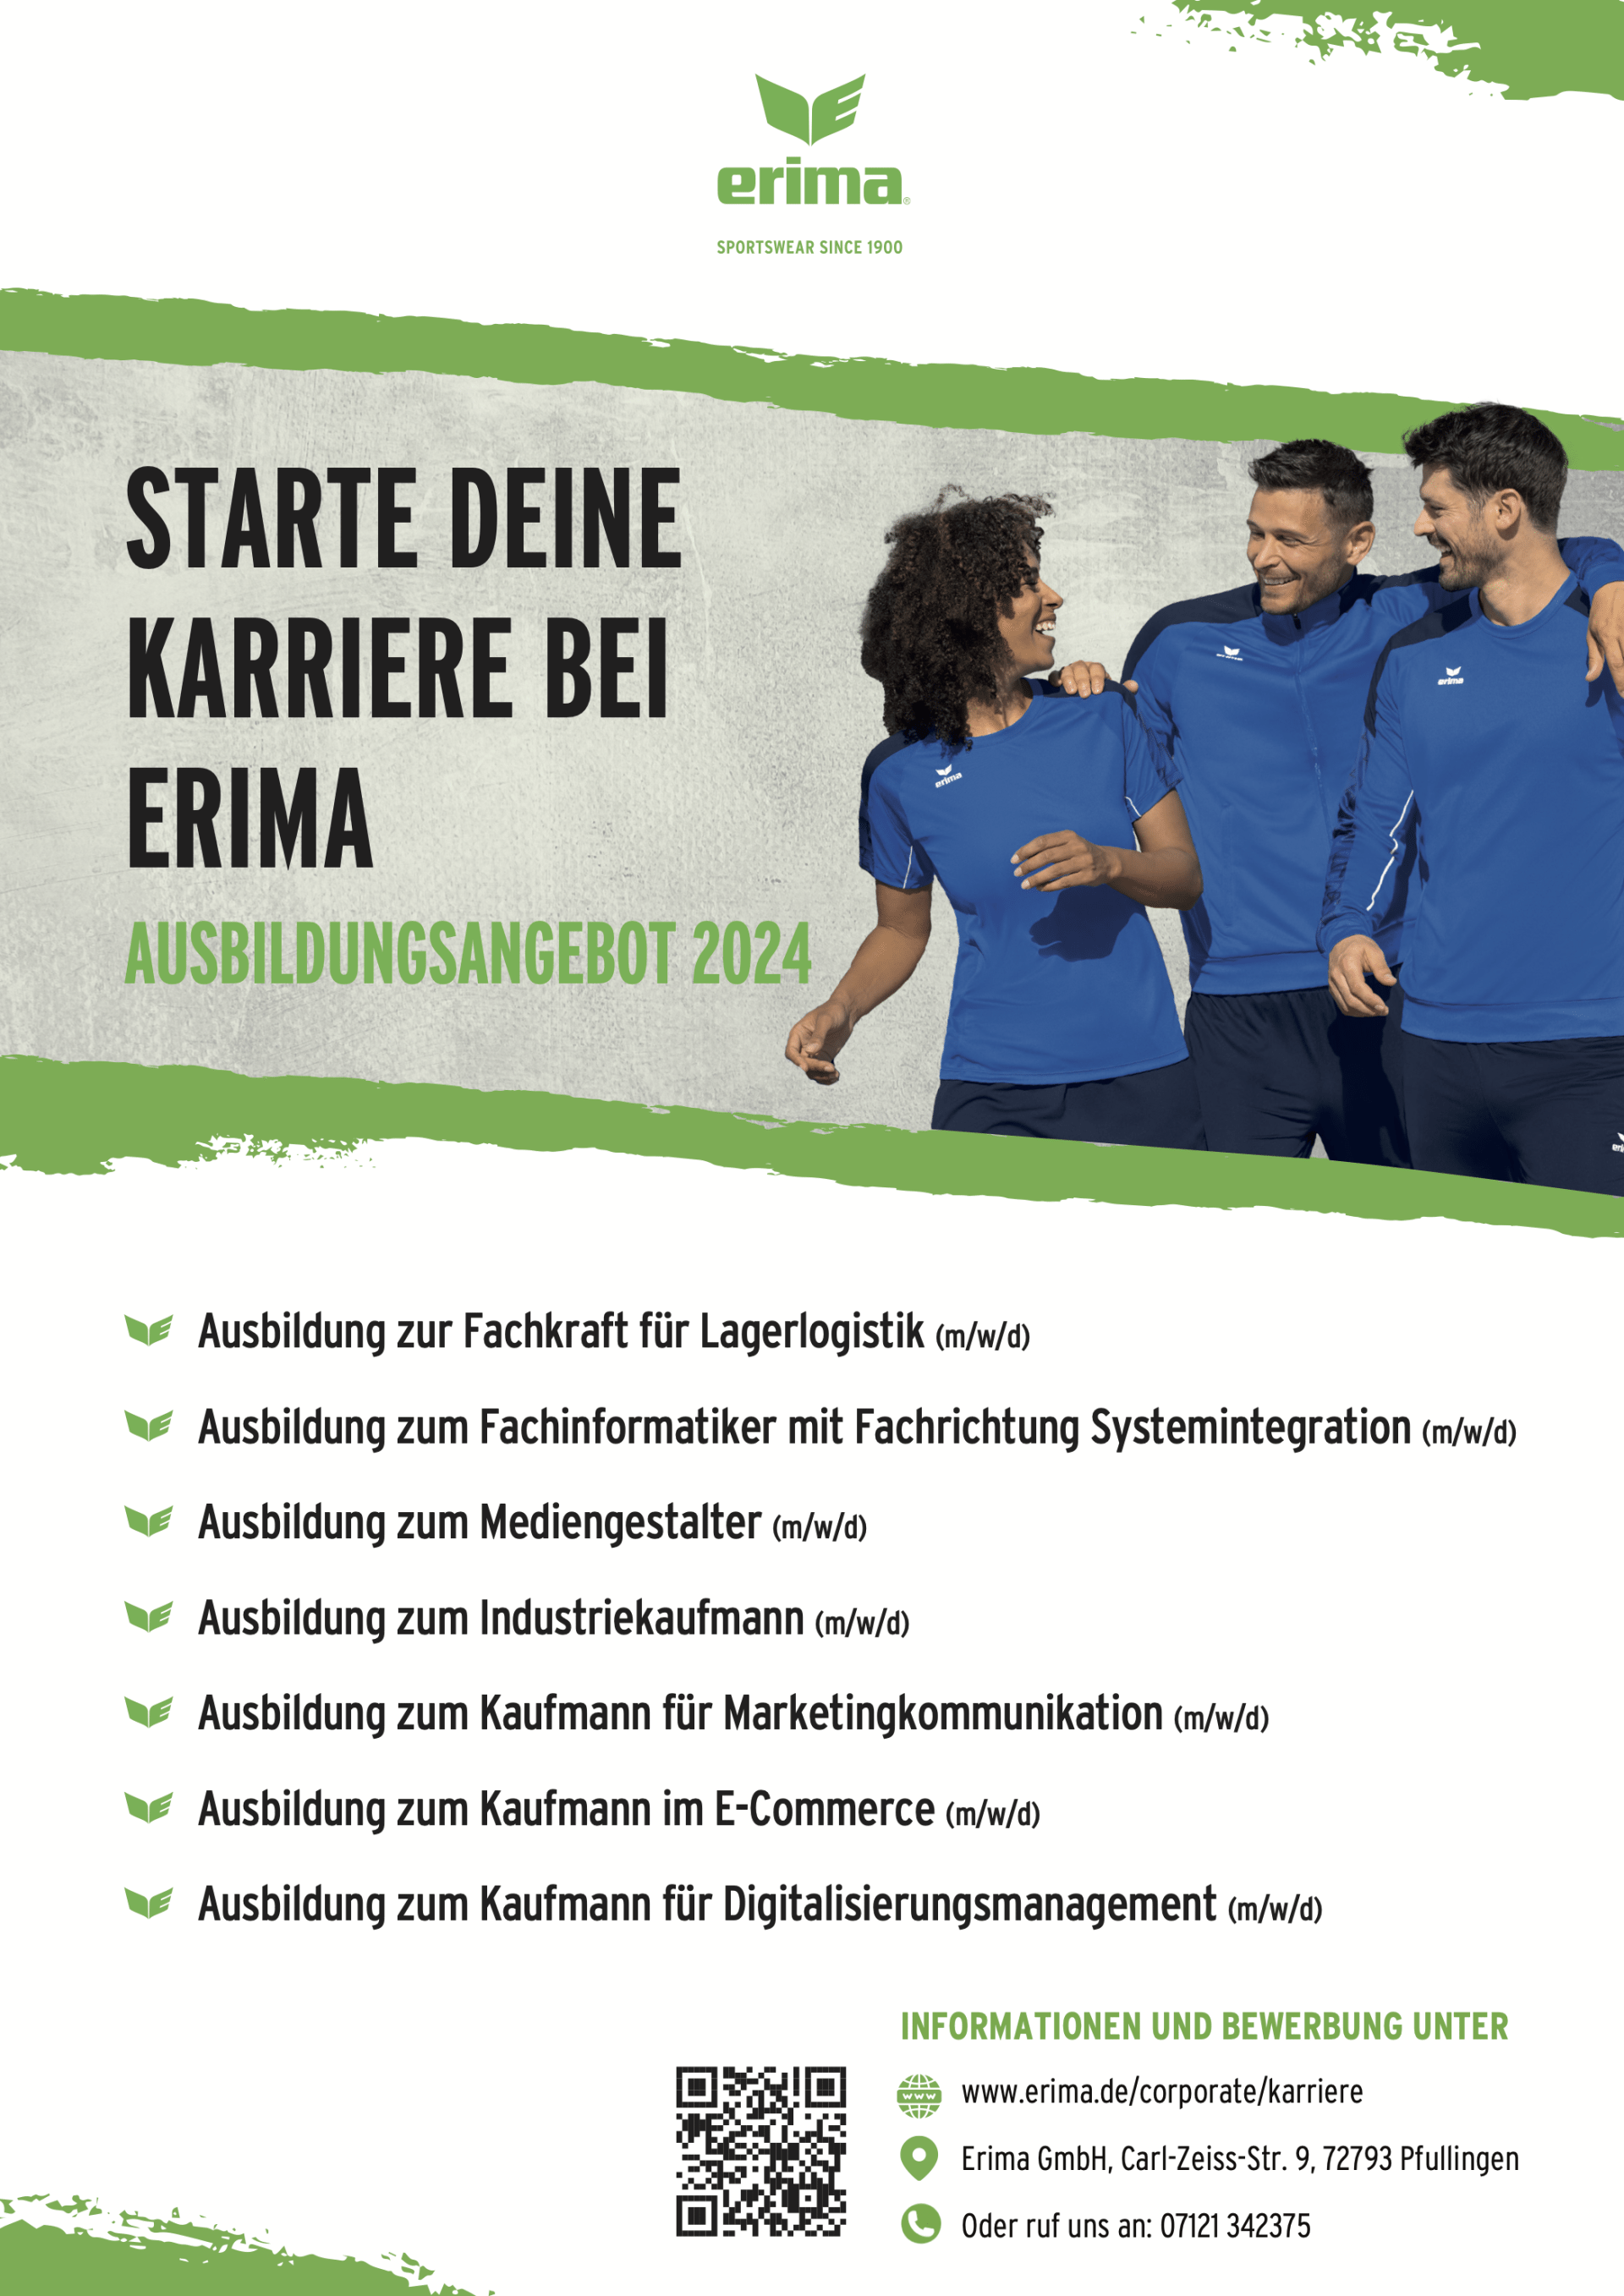 Ausbildungsangebote 2024 | Erima GmbH, Pfullingen